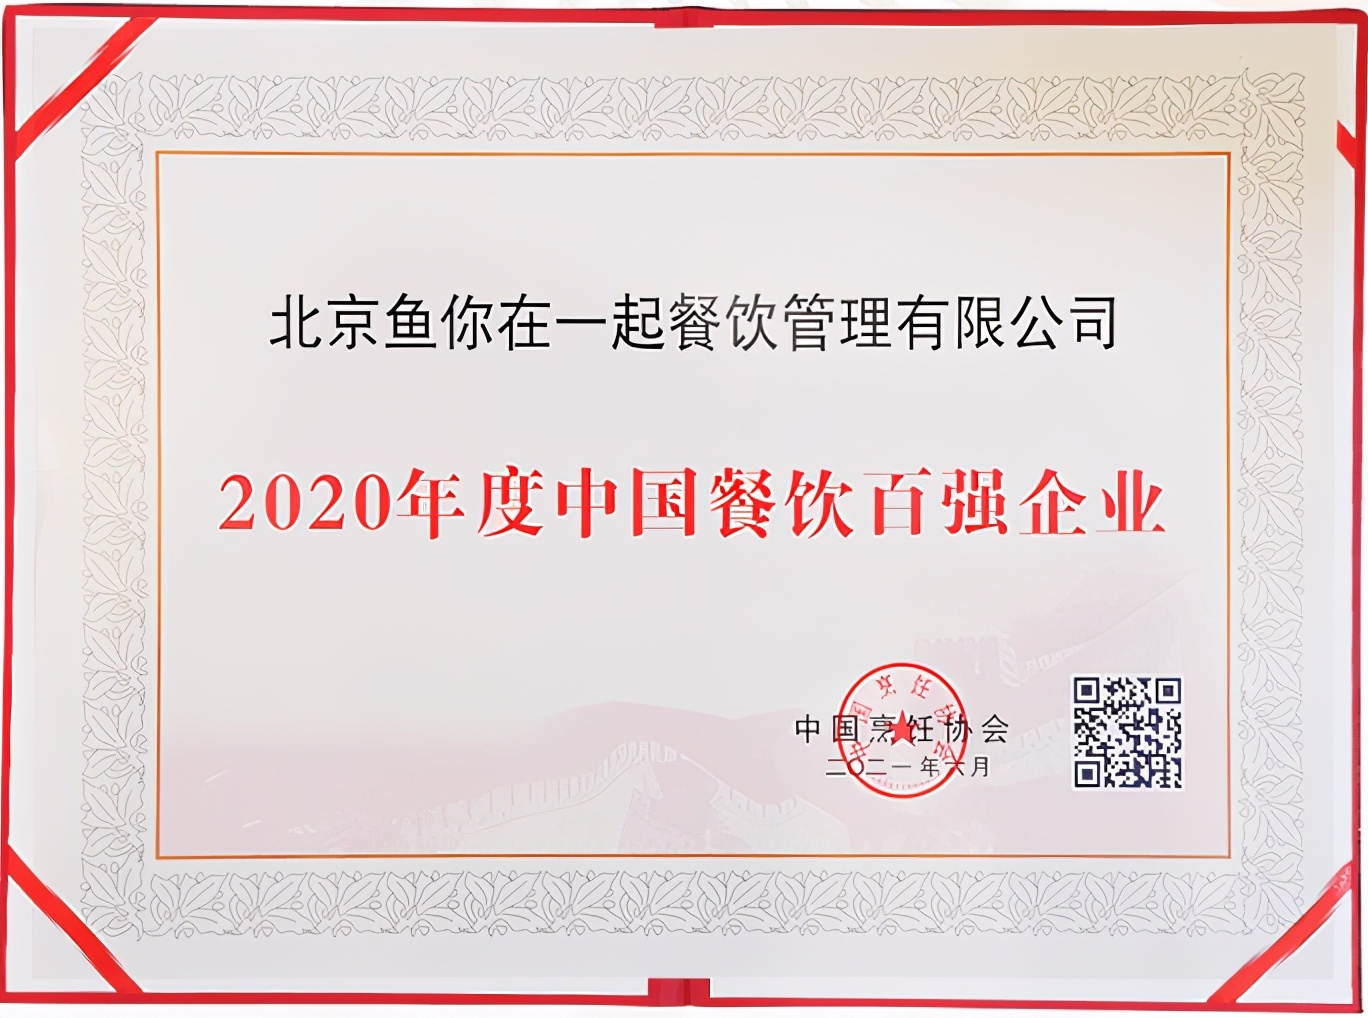 鱼你在一起再度登榜2020年度中国餐饮百强企业榜单